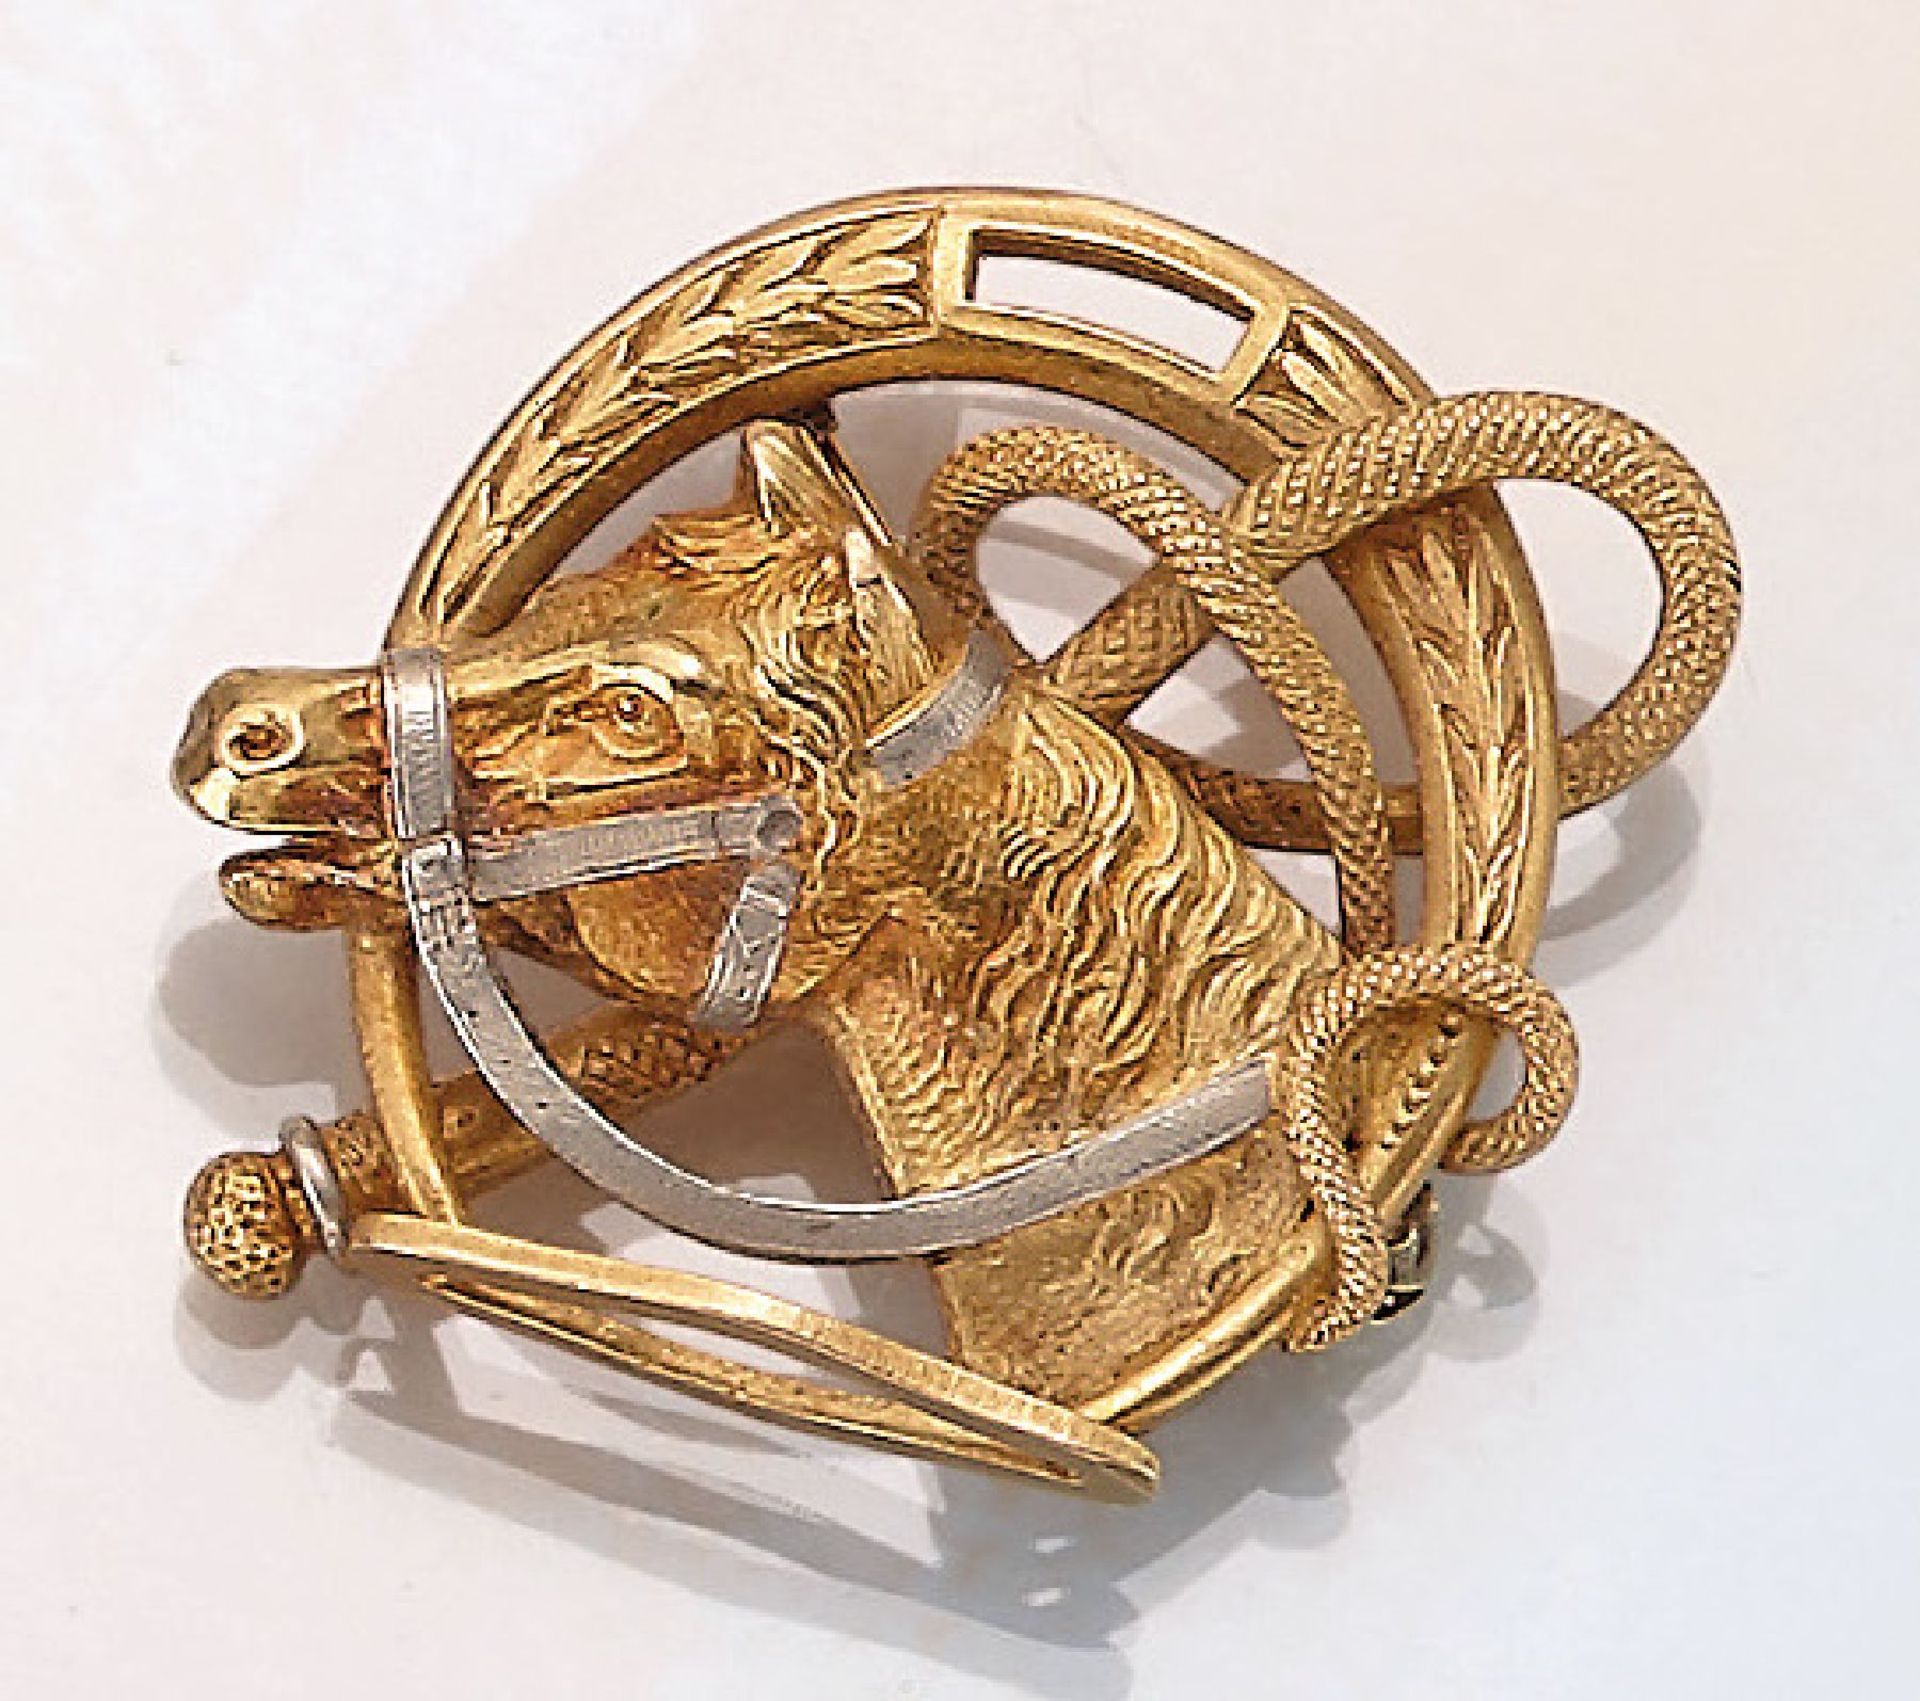 18 kt Gold Brosche, Frankreich um 1900, GG/WG 750/000, feiner Guss, grav., reine Glückssymbolik,